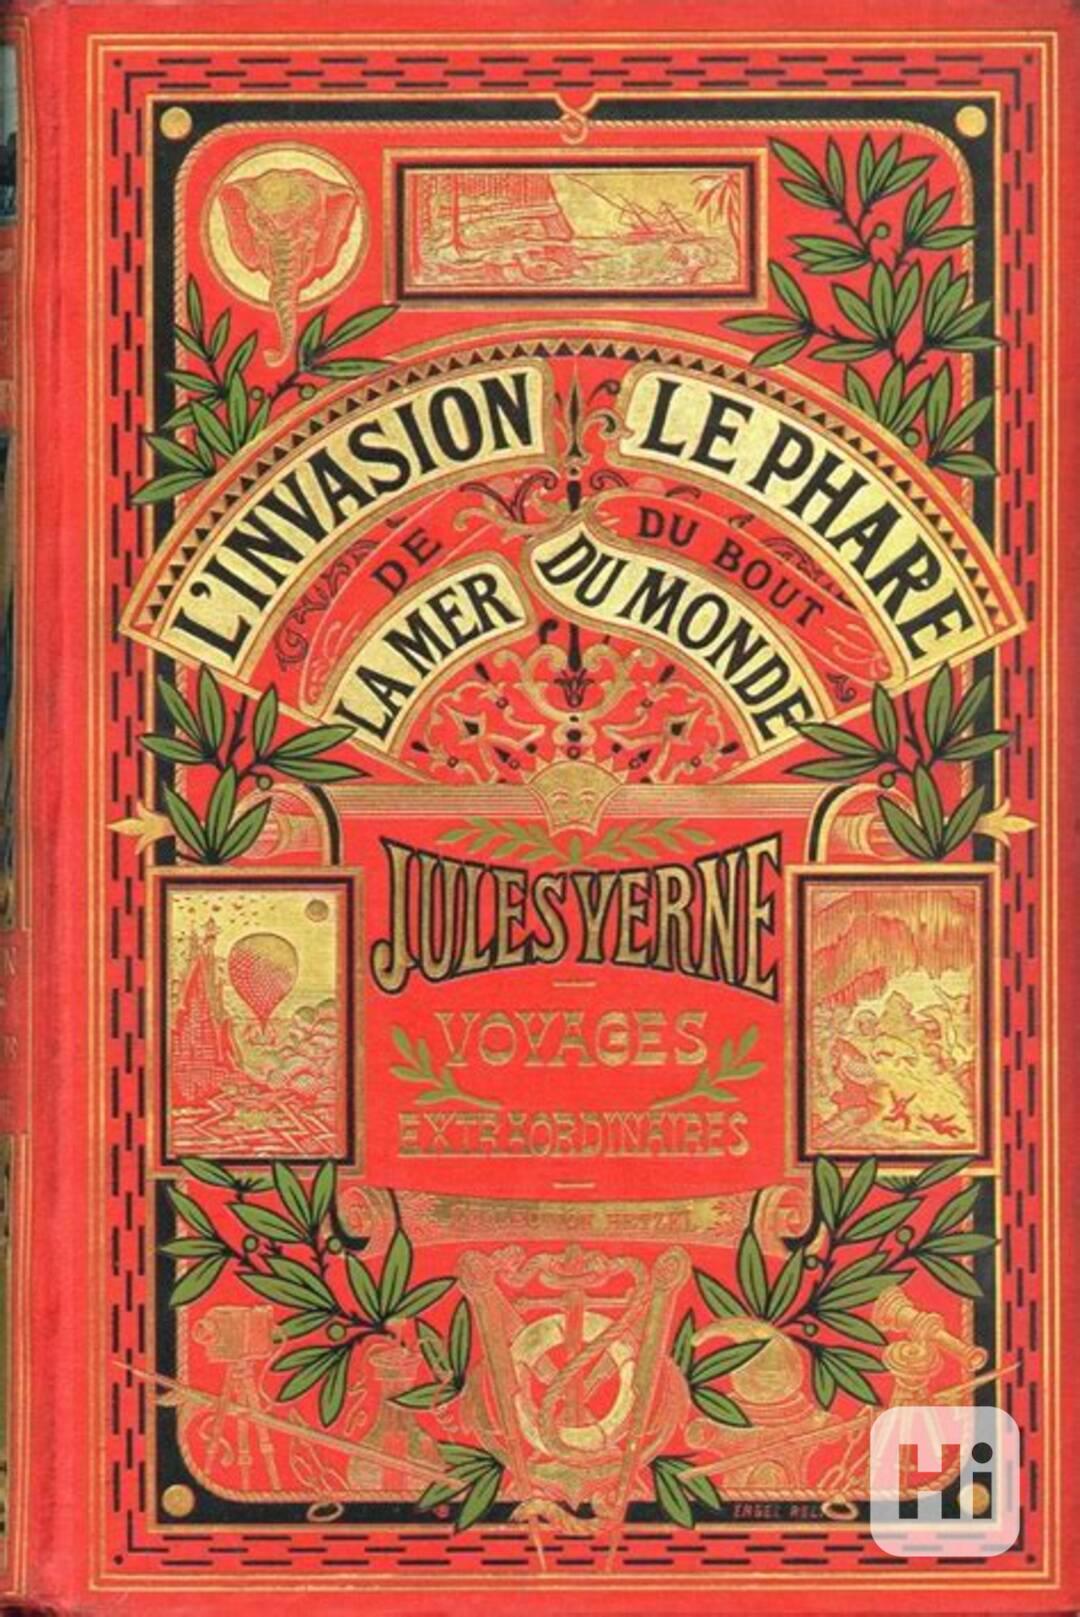 Audioknihy - Verneovky - ve Francouzštině - přes 25 knih! - foto 1